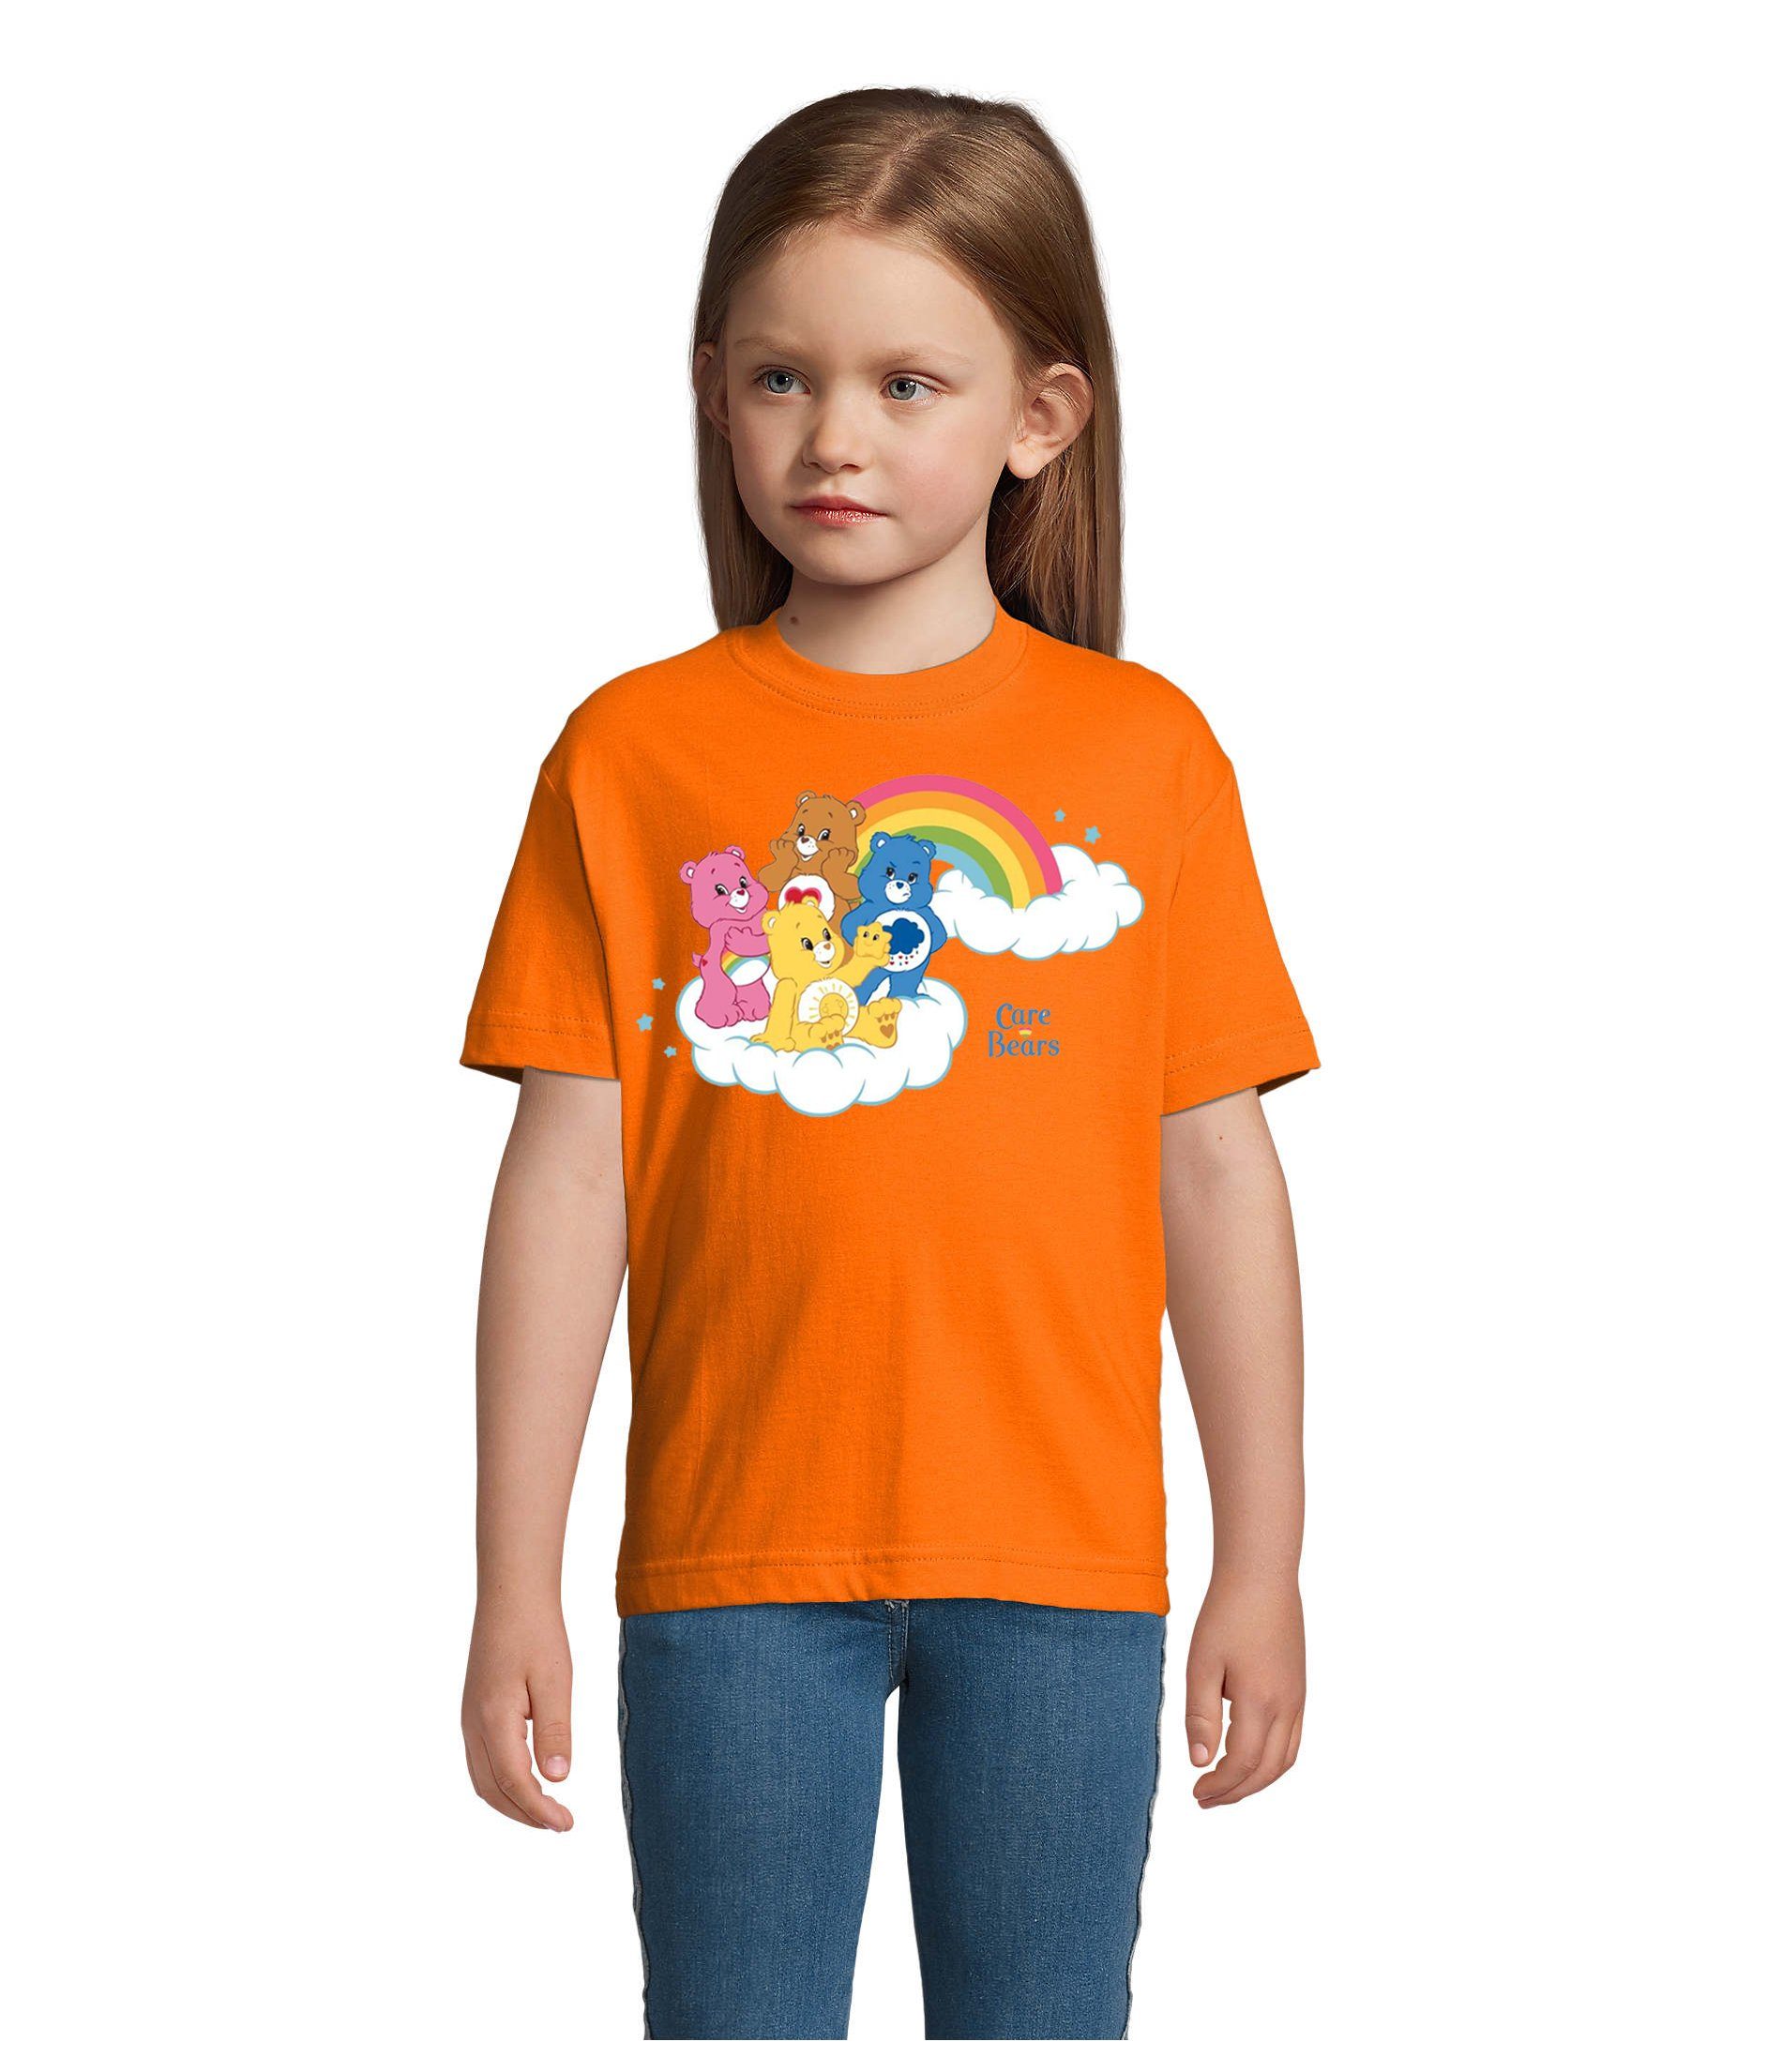 Glücksbärchis Orange & Kinder Blondie Bärchis Care Brownie T-Shirt Hab-Dich-lieb Wolkenland Bears